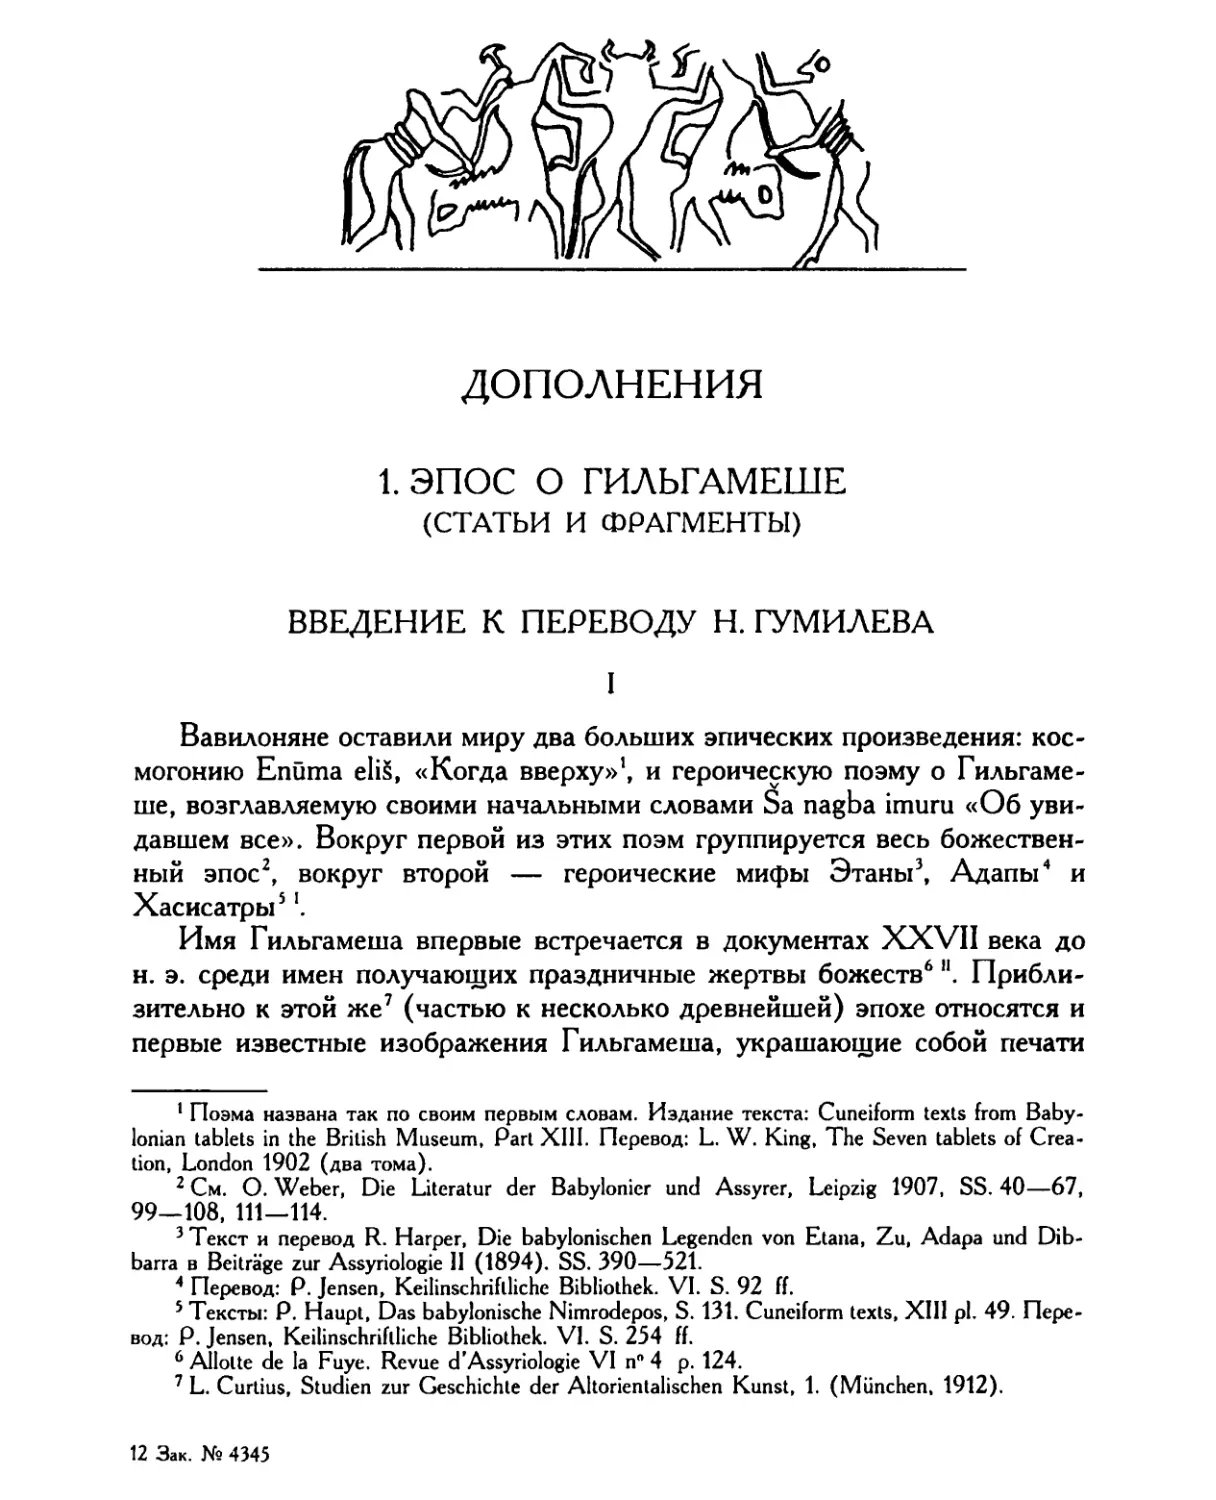 Дополнения
Введение к переводу Н. Гумилева